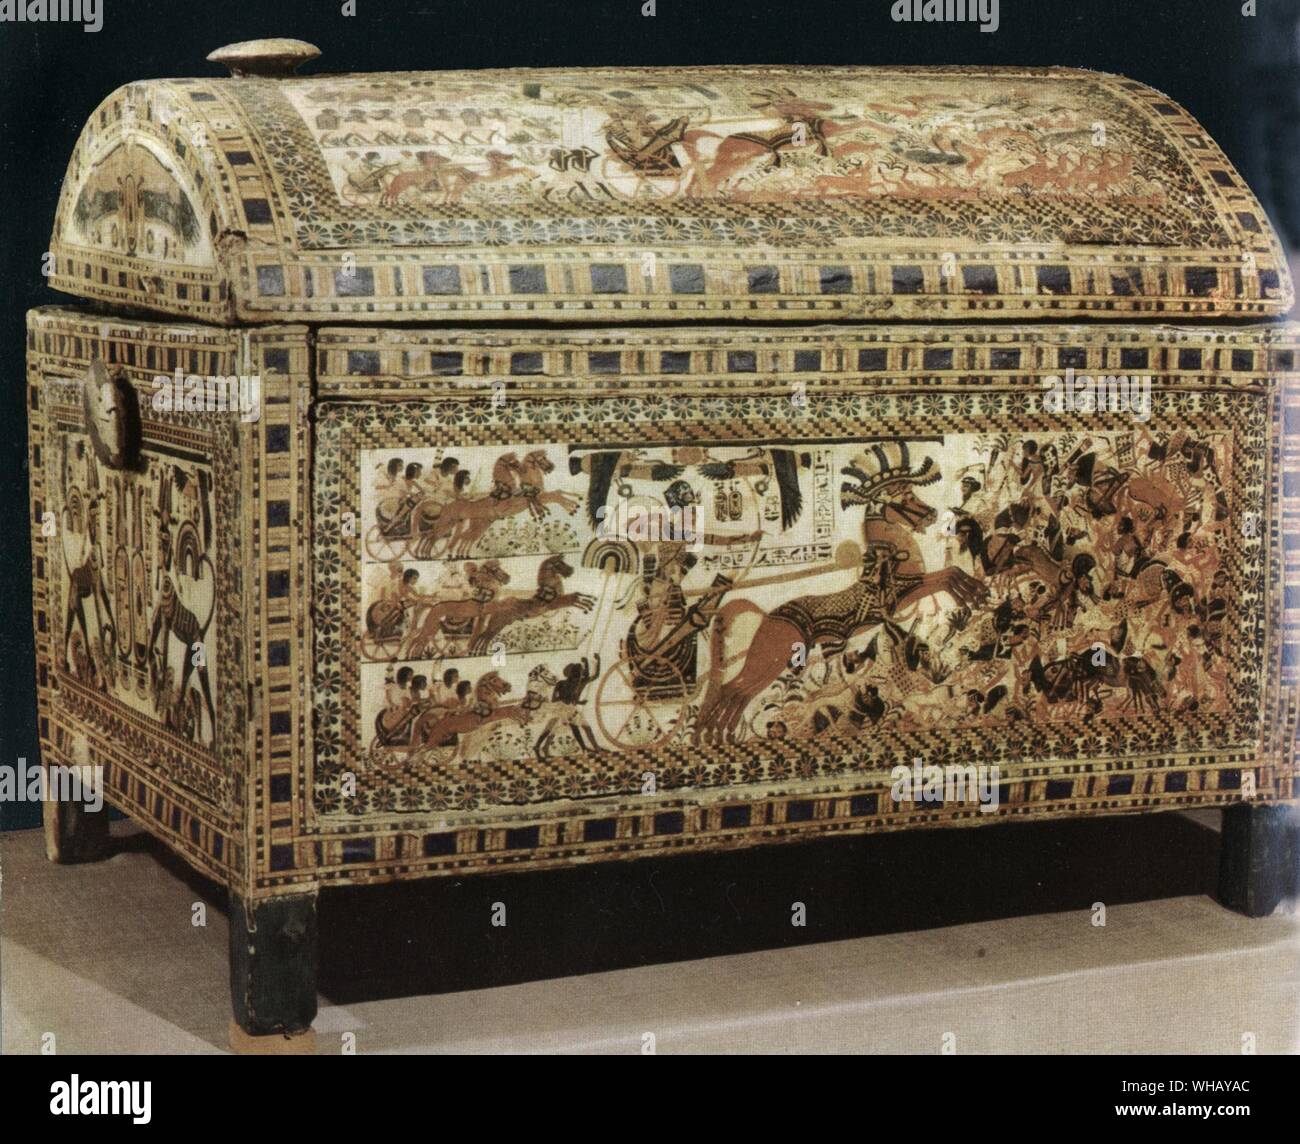 Die berühmten bemalten Box, die zeigt, Tut-ench-Amun in seinem Wagen. Tukankhamen, von Christiane Desroches Noblecourt, Seite 80. Stockfoto